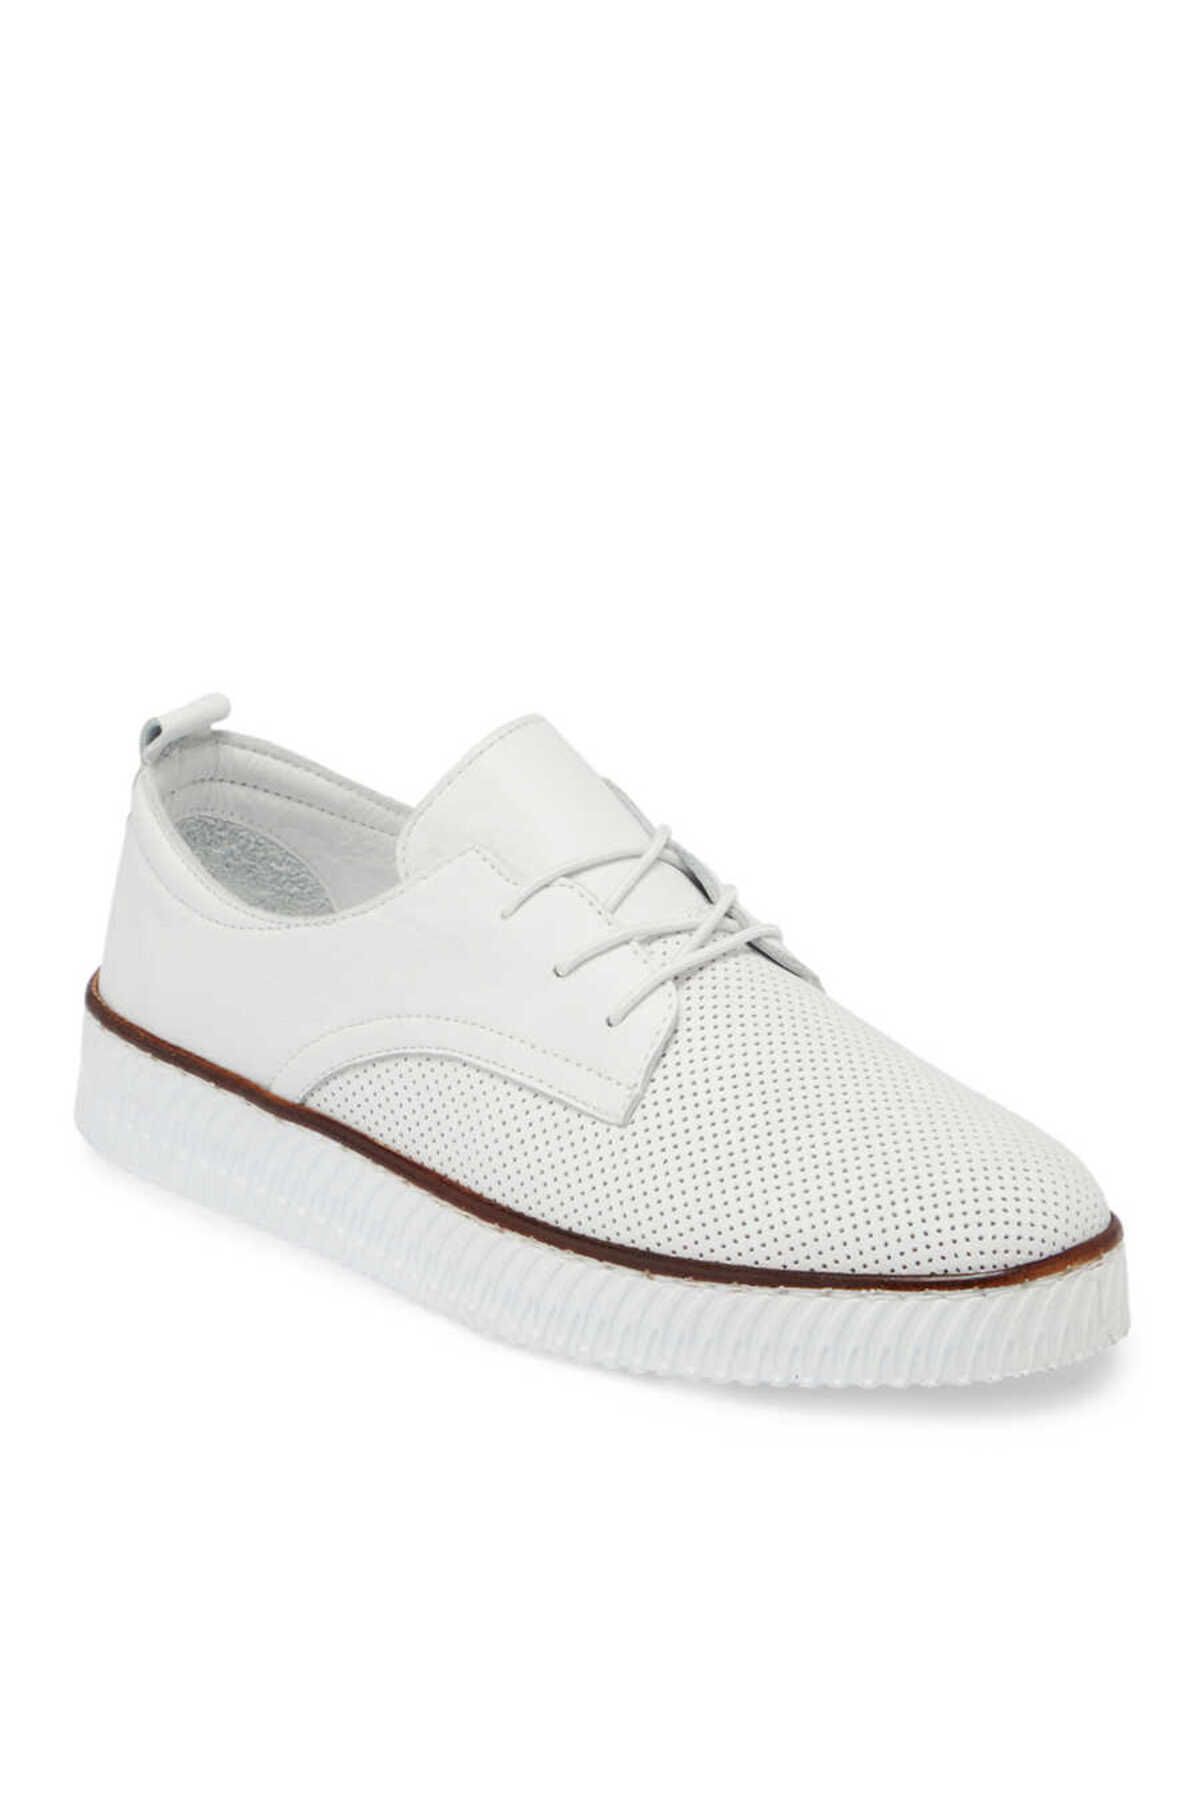 Tergan Beyaz Deri Kadın Casual Ayakkabı - K23I1AY66483-A26